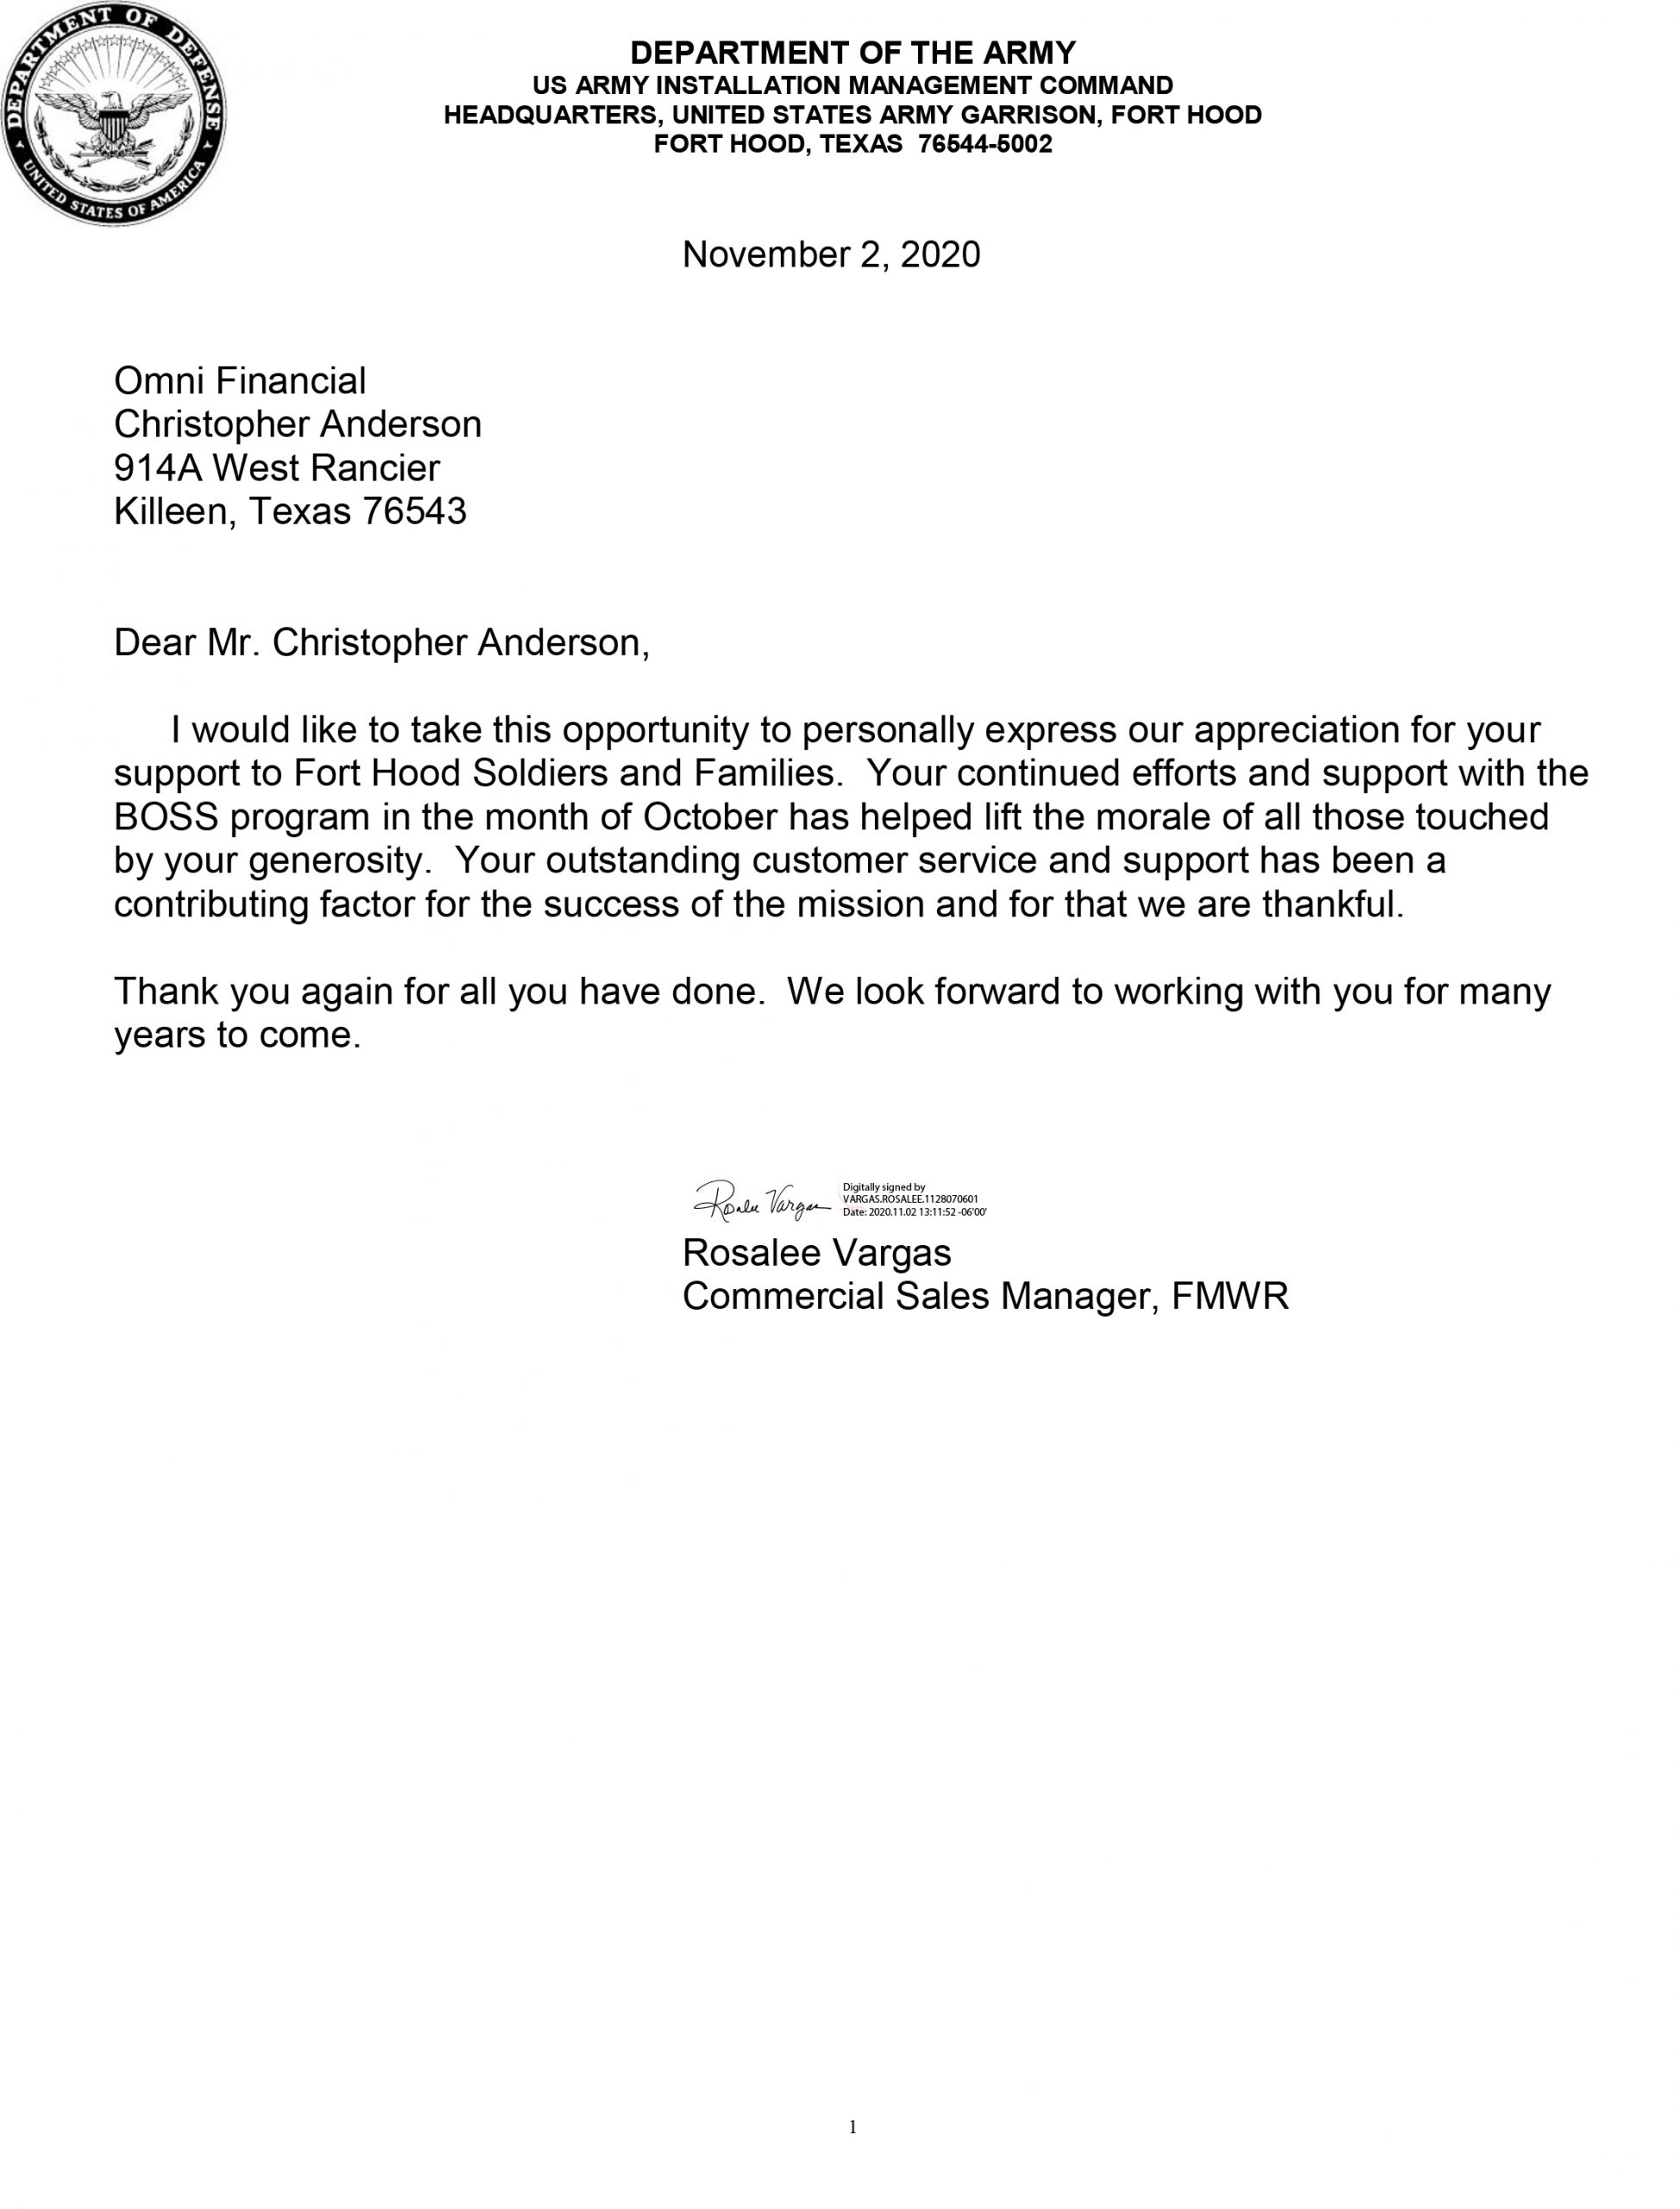 Boss Program Letter of Appreciation